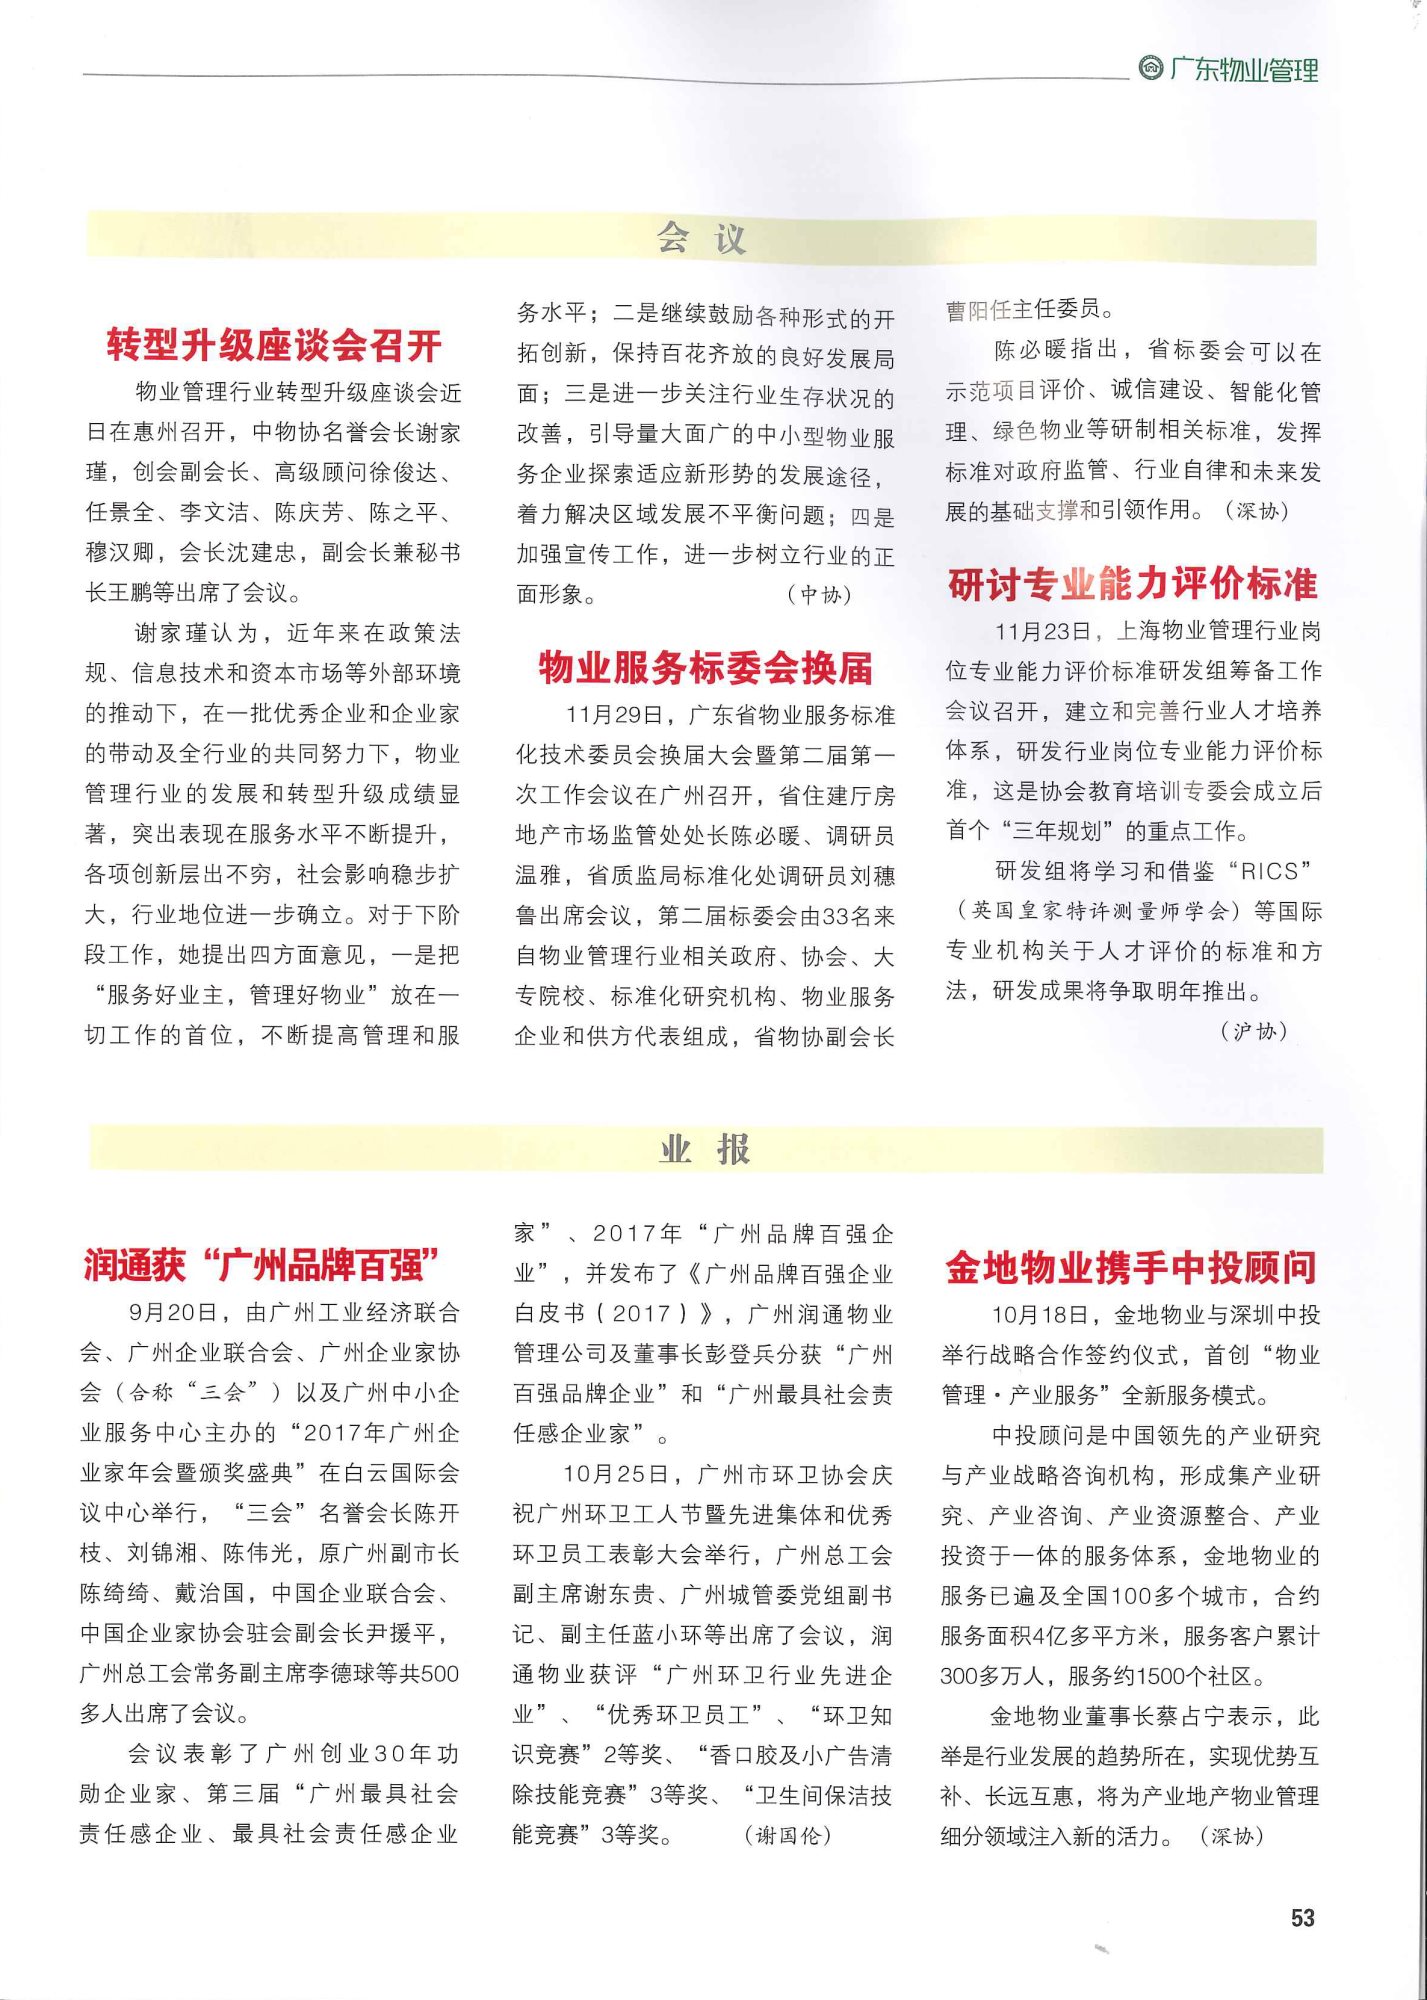 《廣東物業管理》第4期2017年12月總第9期《潤通獲“廣州品牌百強”》